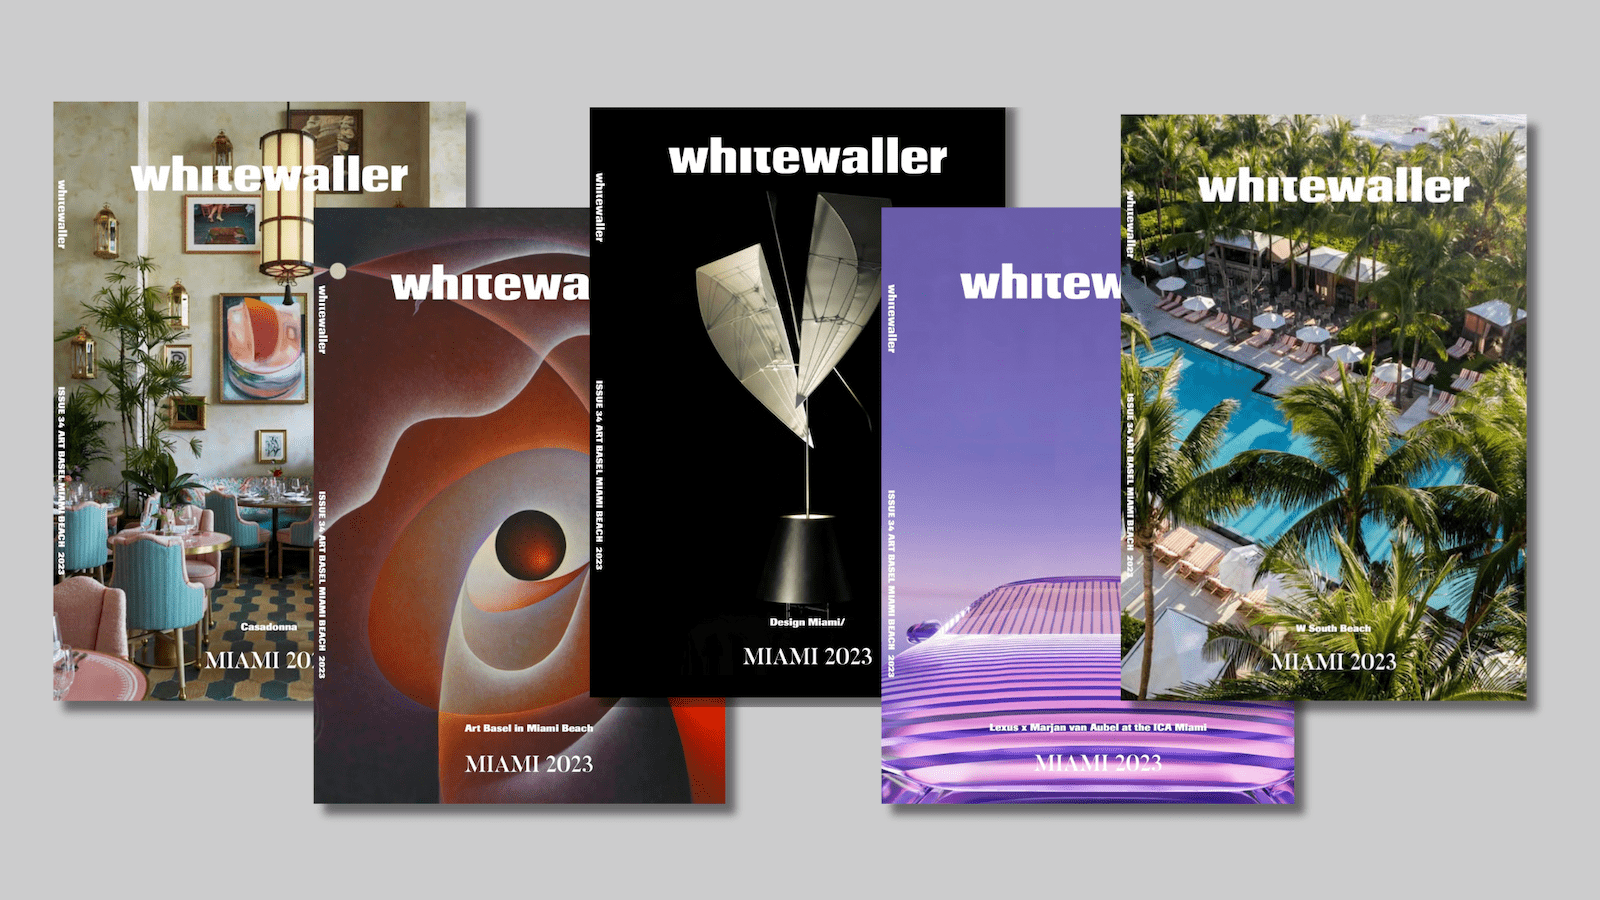 Whitewaller Miami for Miami Art Week 2023